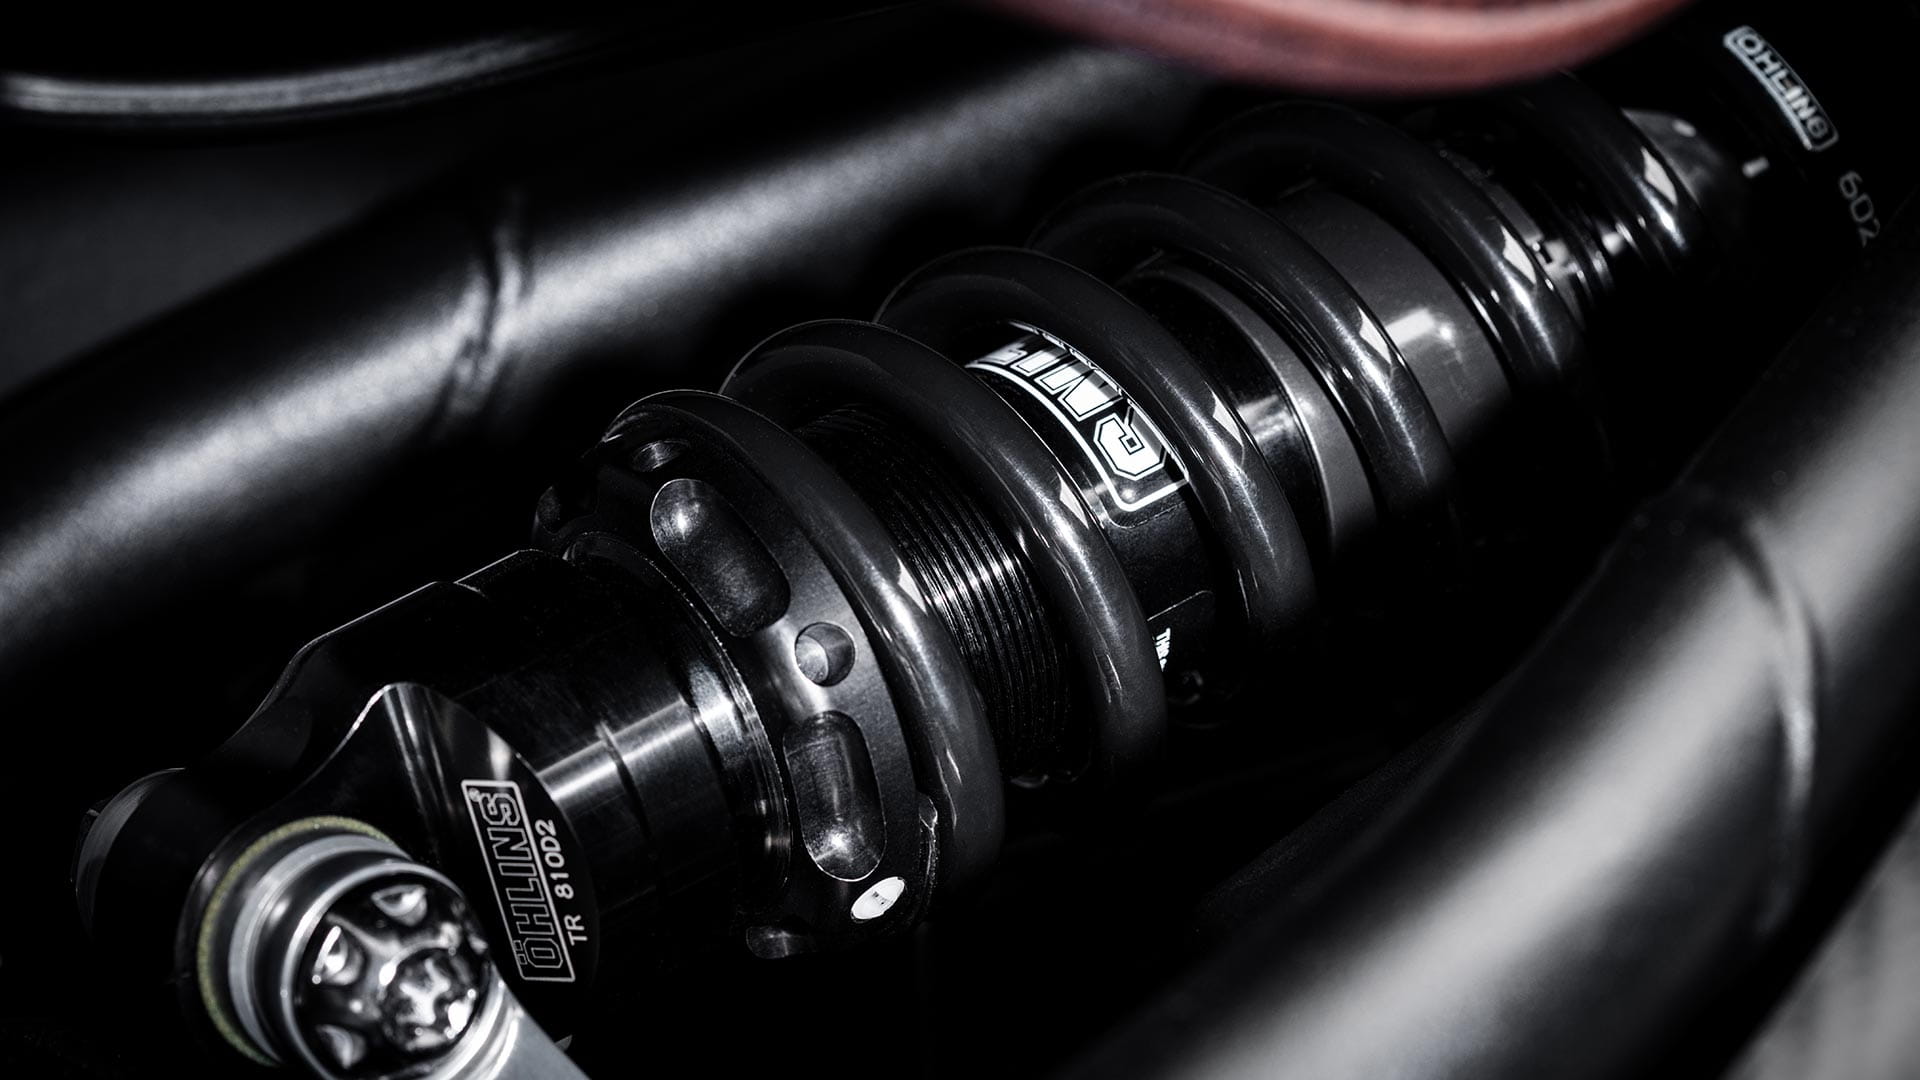 Close-up shot of the Triumph Bobber TFC's premium Öhlins rear suspension